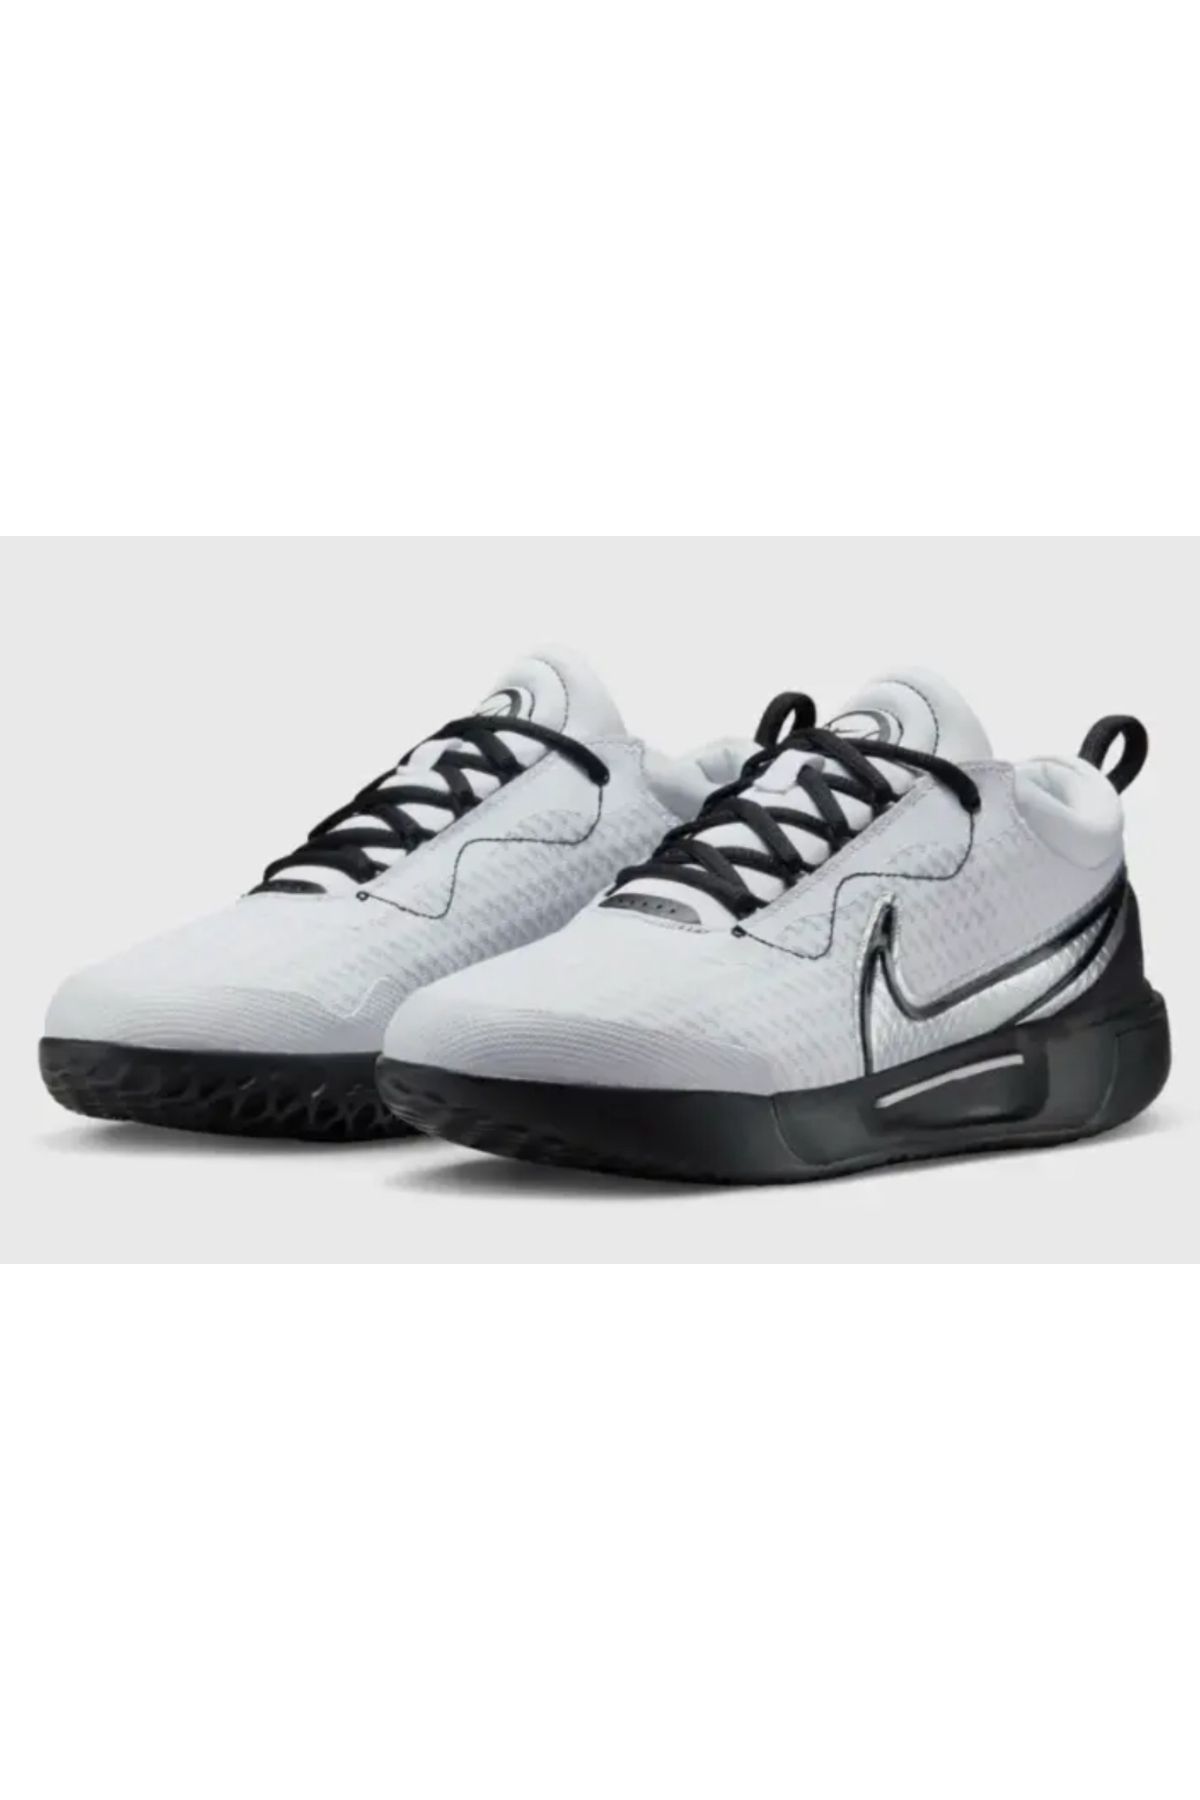 Nike NikeCourt Air Zoom Pro Sert Kort Kadın Tenis Ayakkabısı